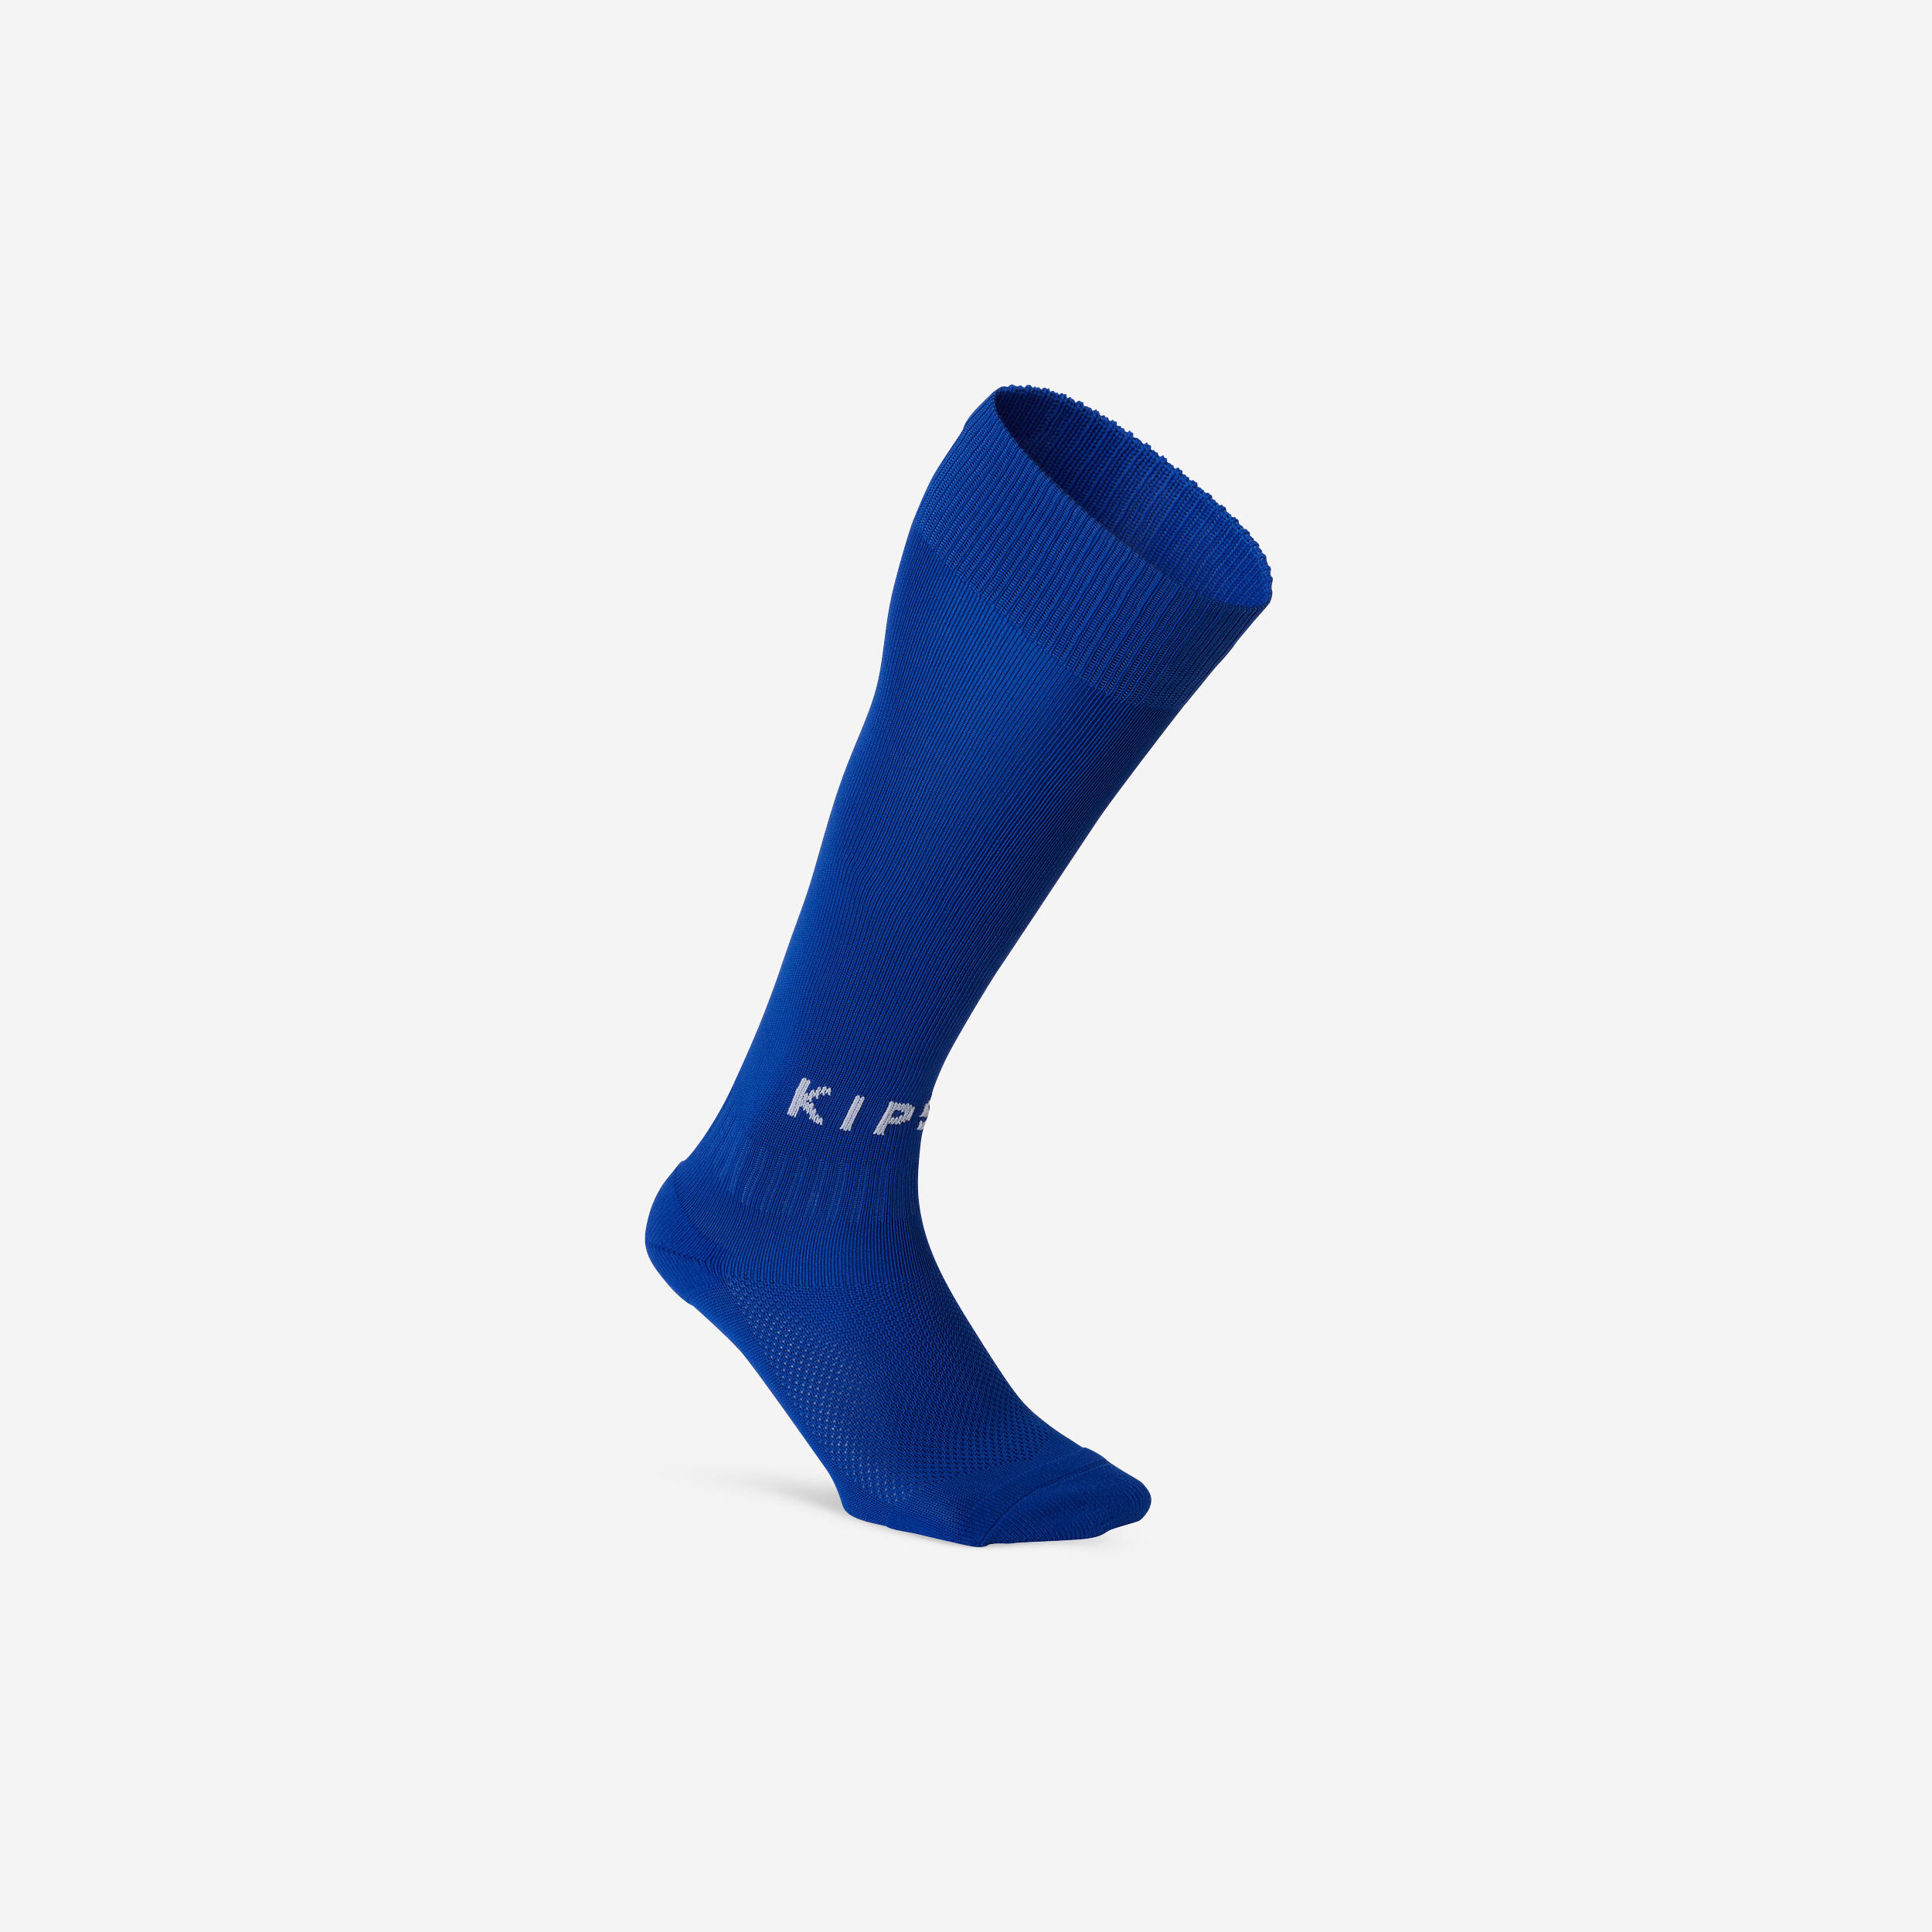 Football Socks \u0026 Stockings - Buy 